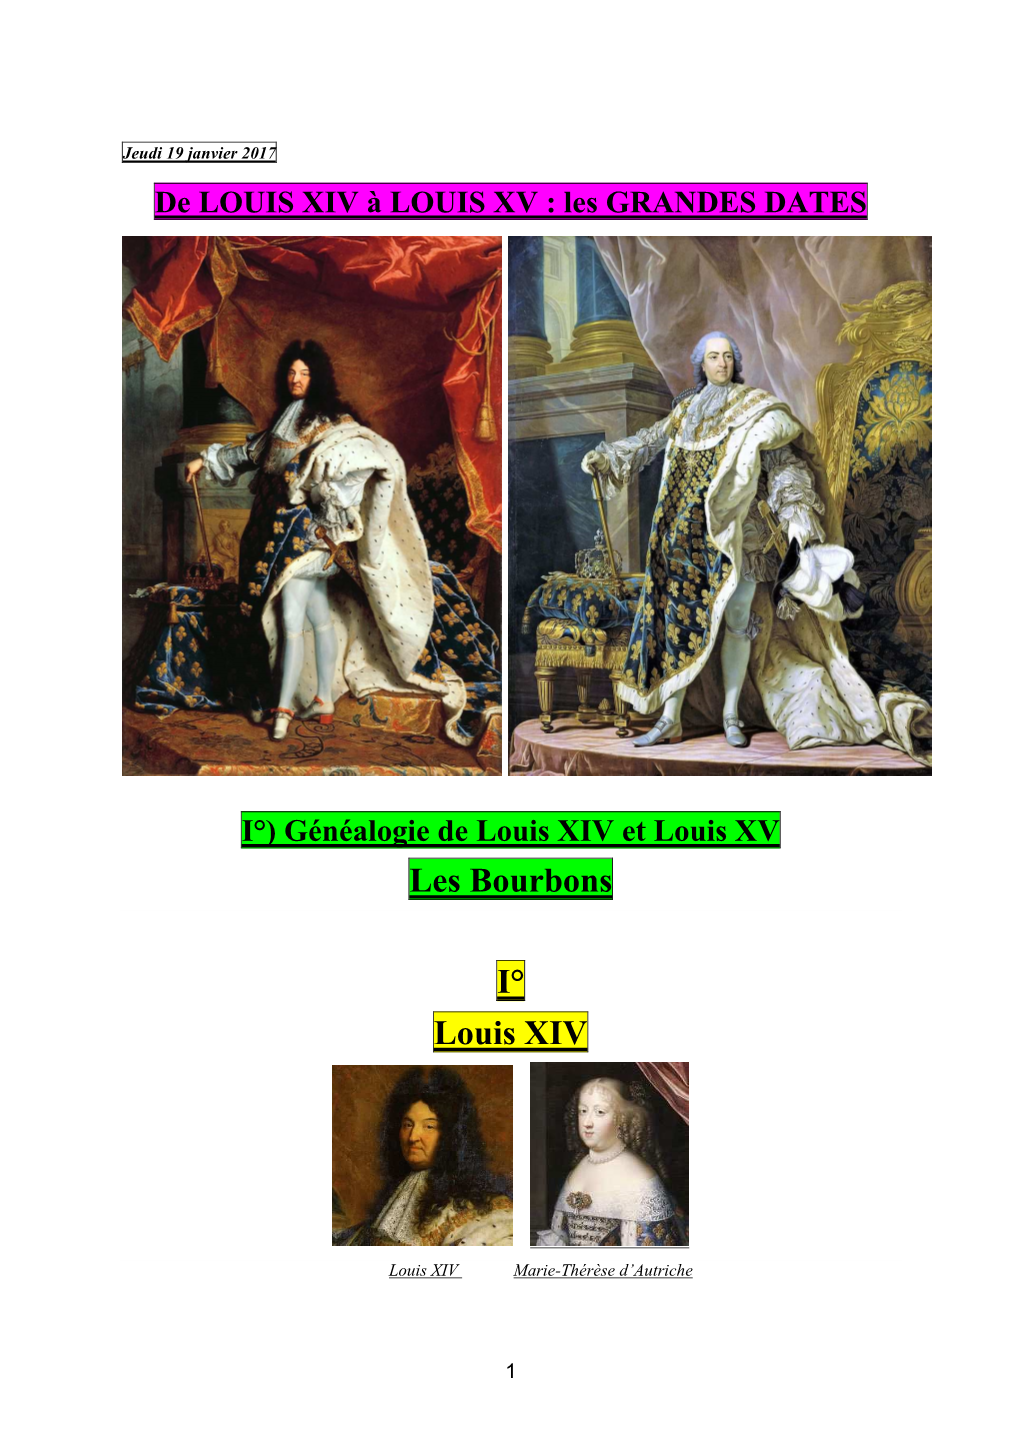 De LOUIS XIV À LOUIS XV : Les GRANDES DATES